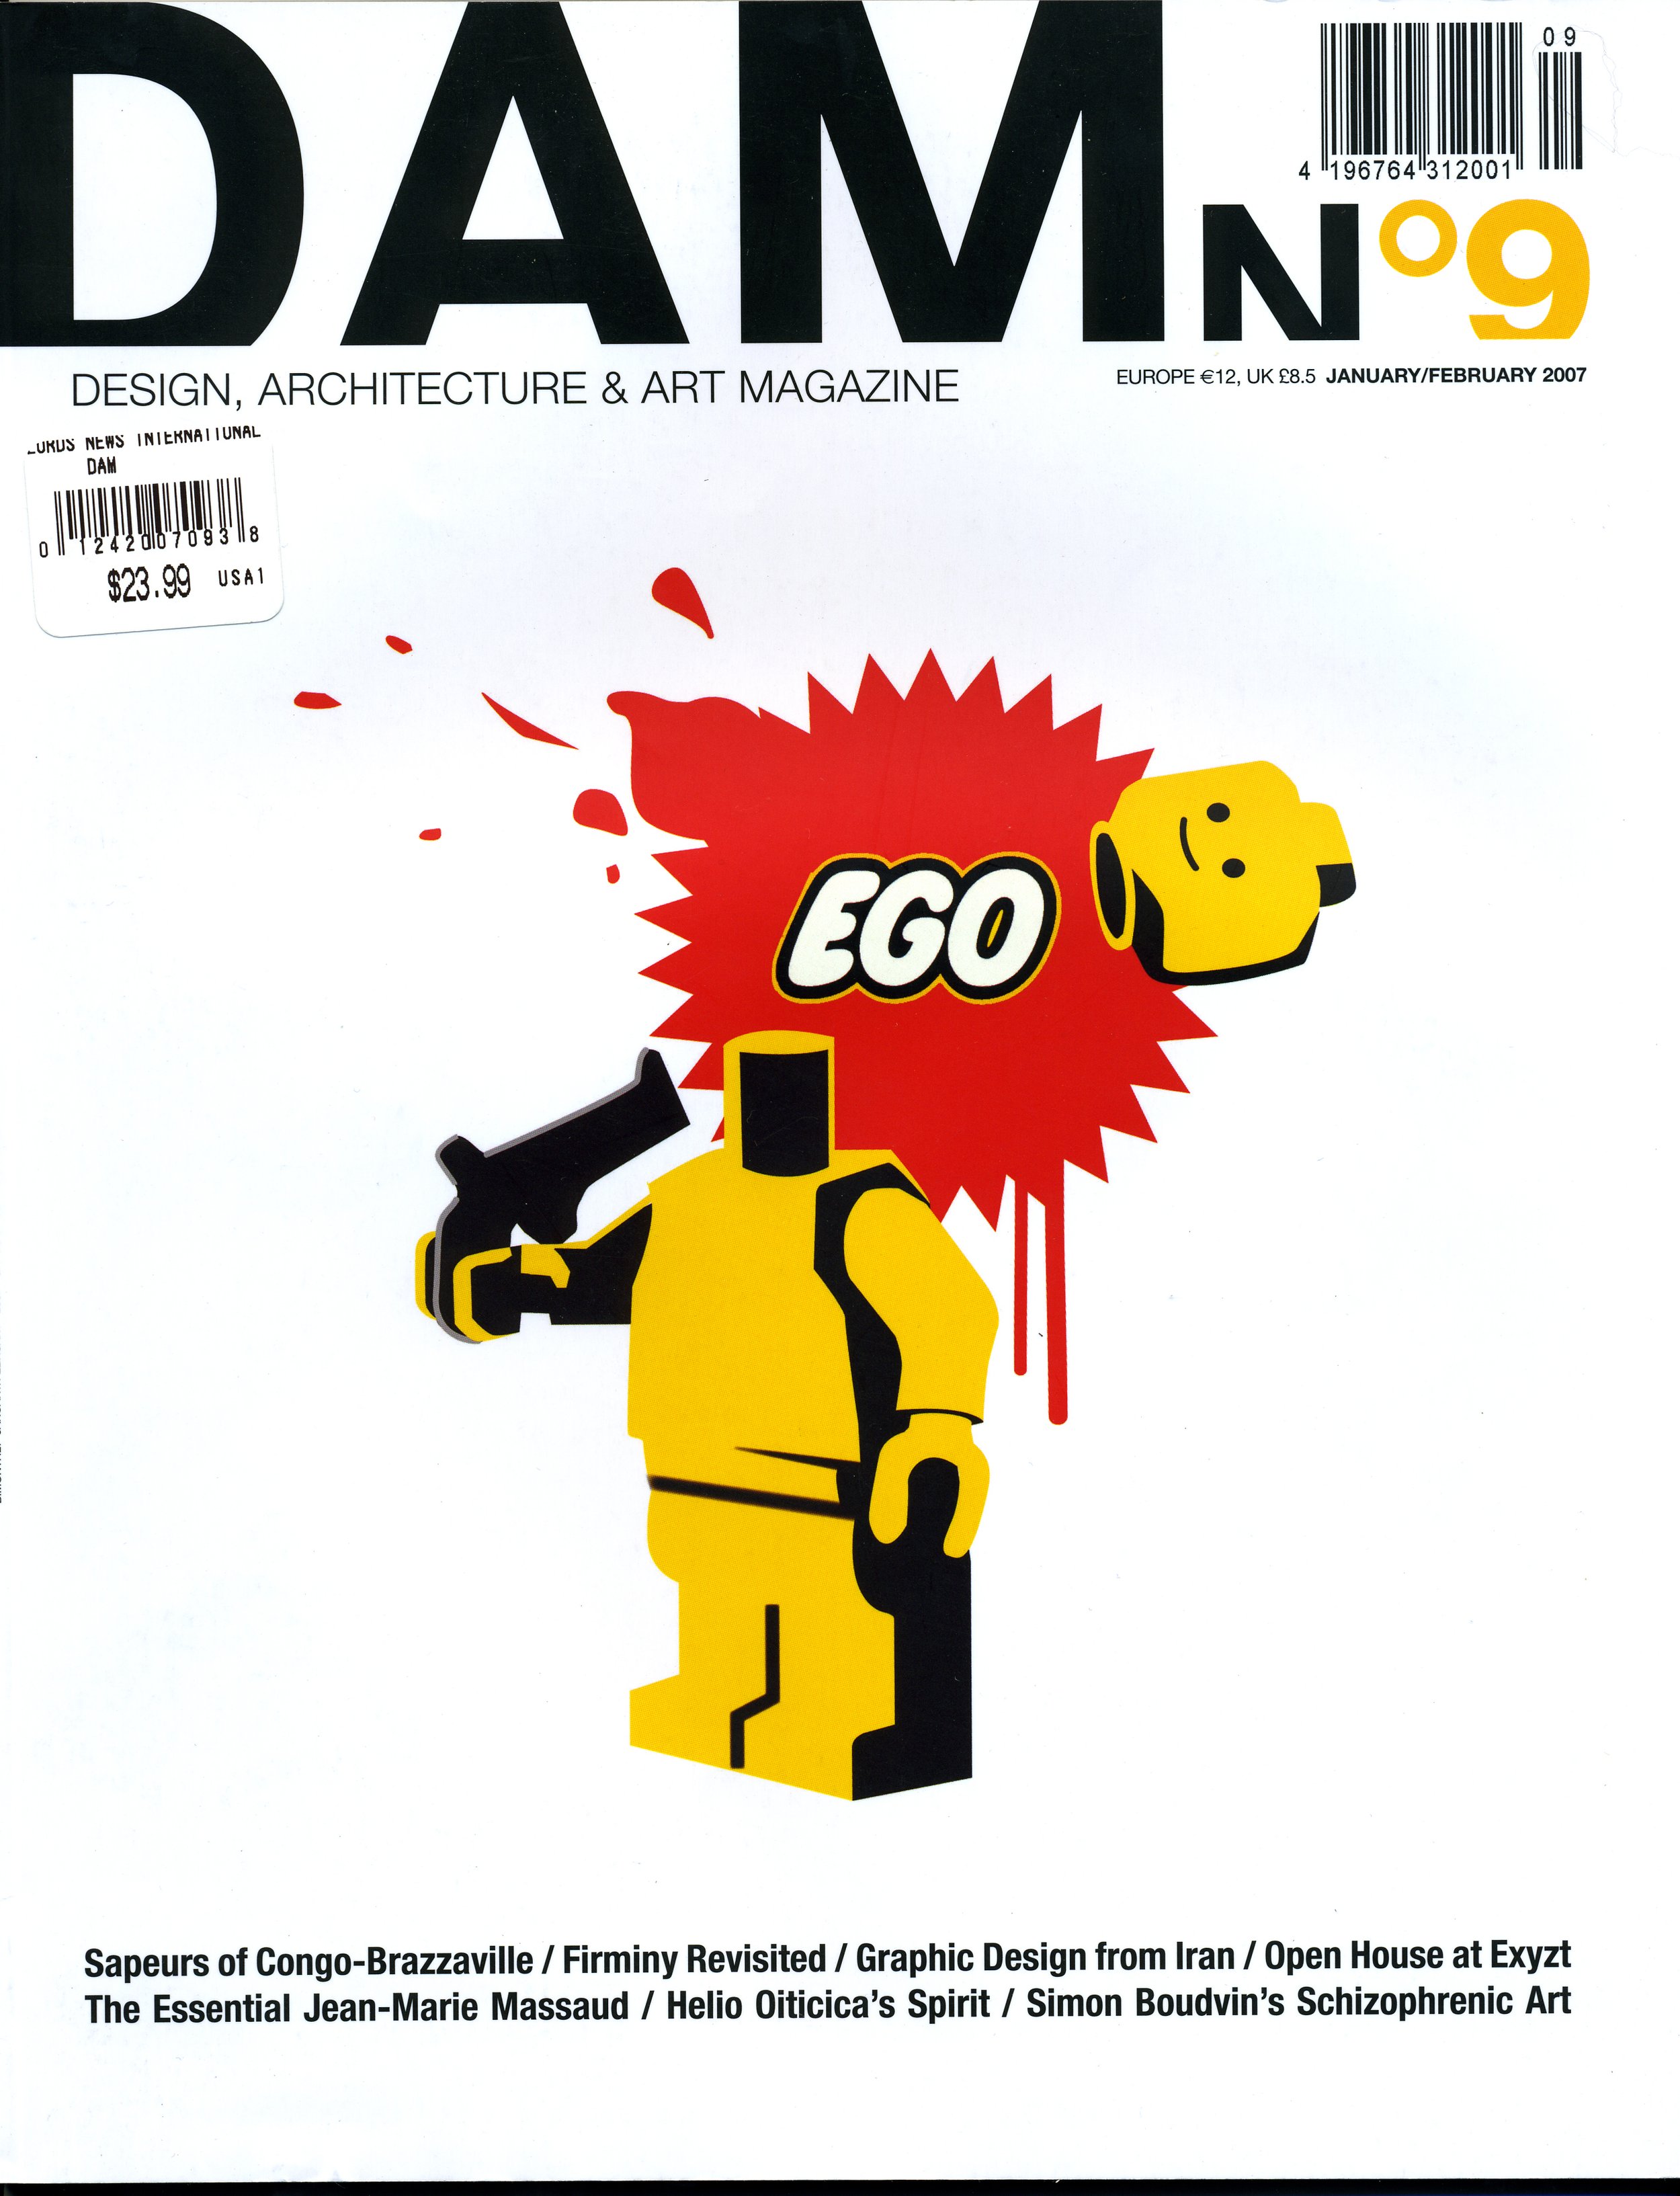 DAMn 9 cover.jpg